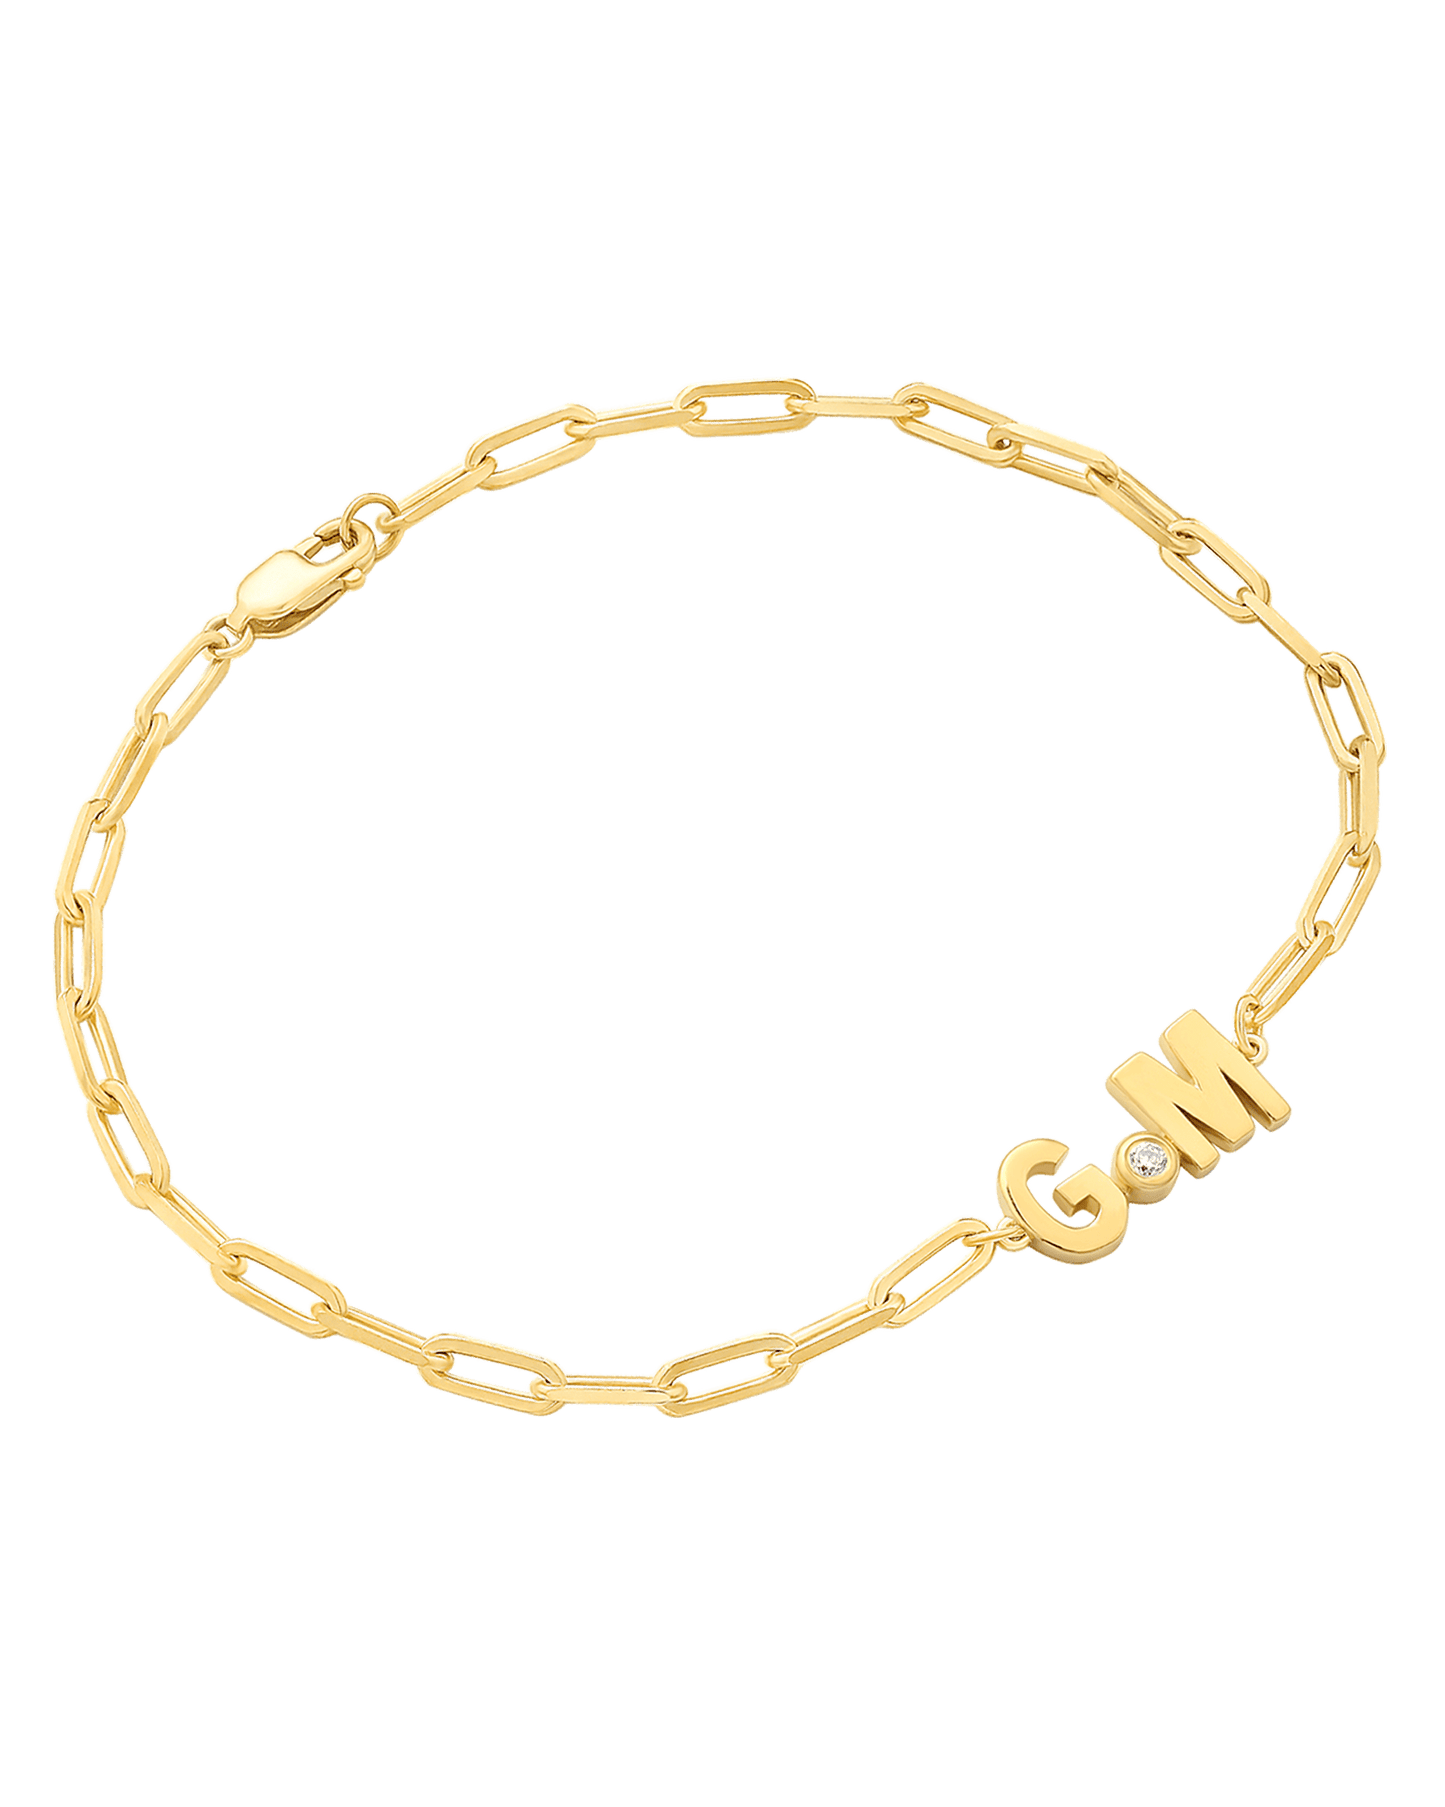 2 Initials Diamond Bracelet - 14K White Gold Bracelets magal-dev 